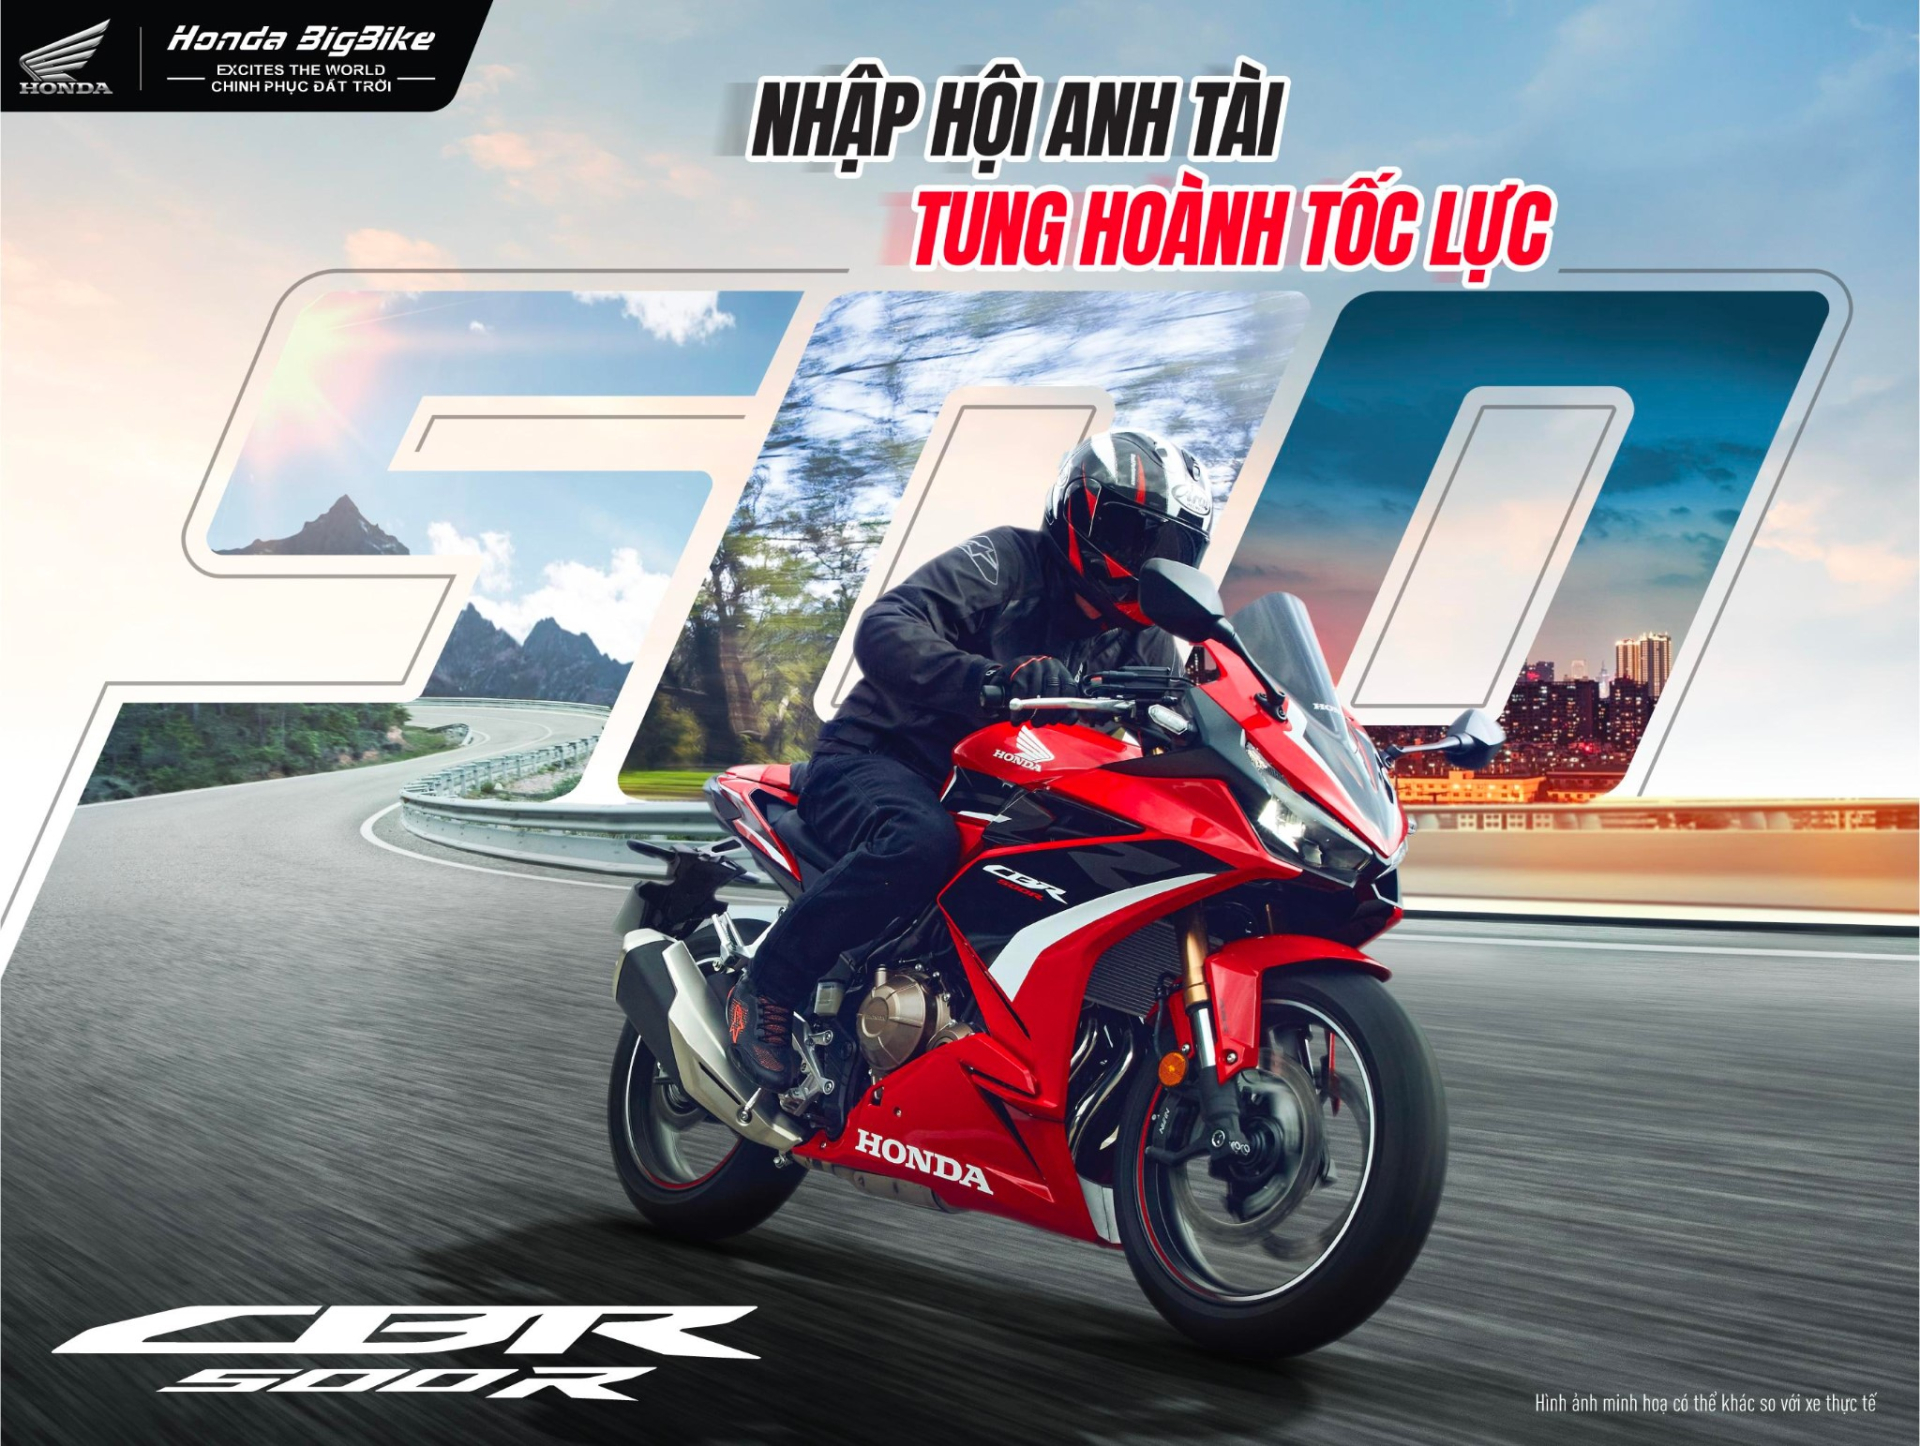 Honda Bigbike Việt Nam - Không chỉ là một cái tên mà còn là một xu thế - ảnh 4